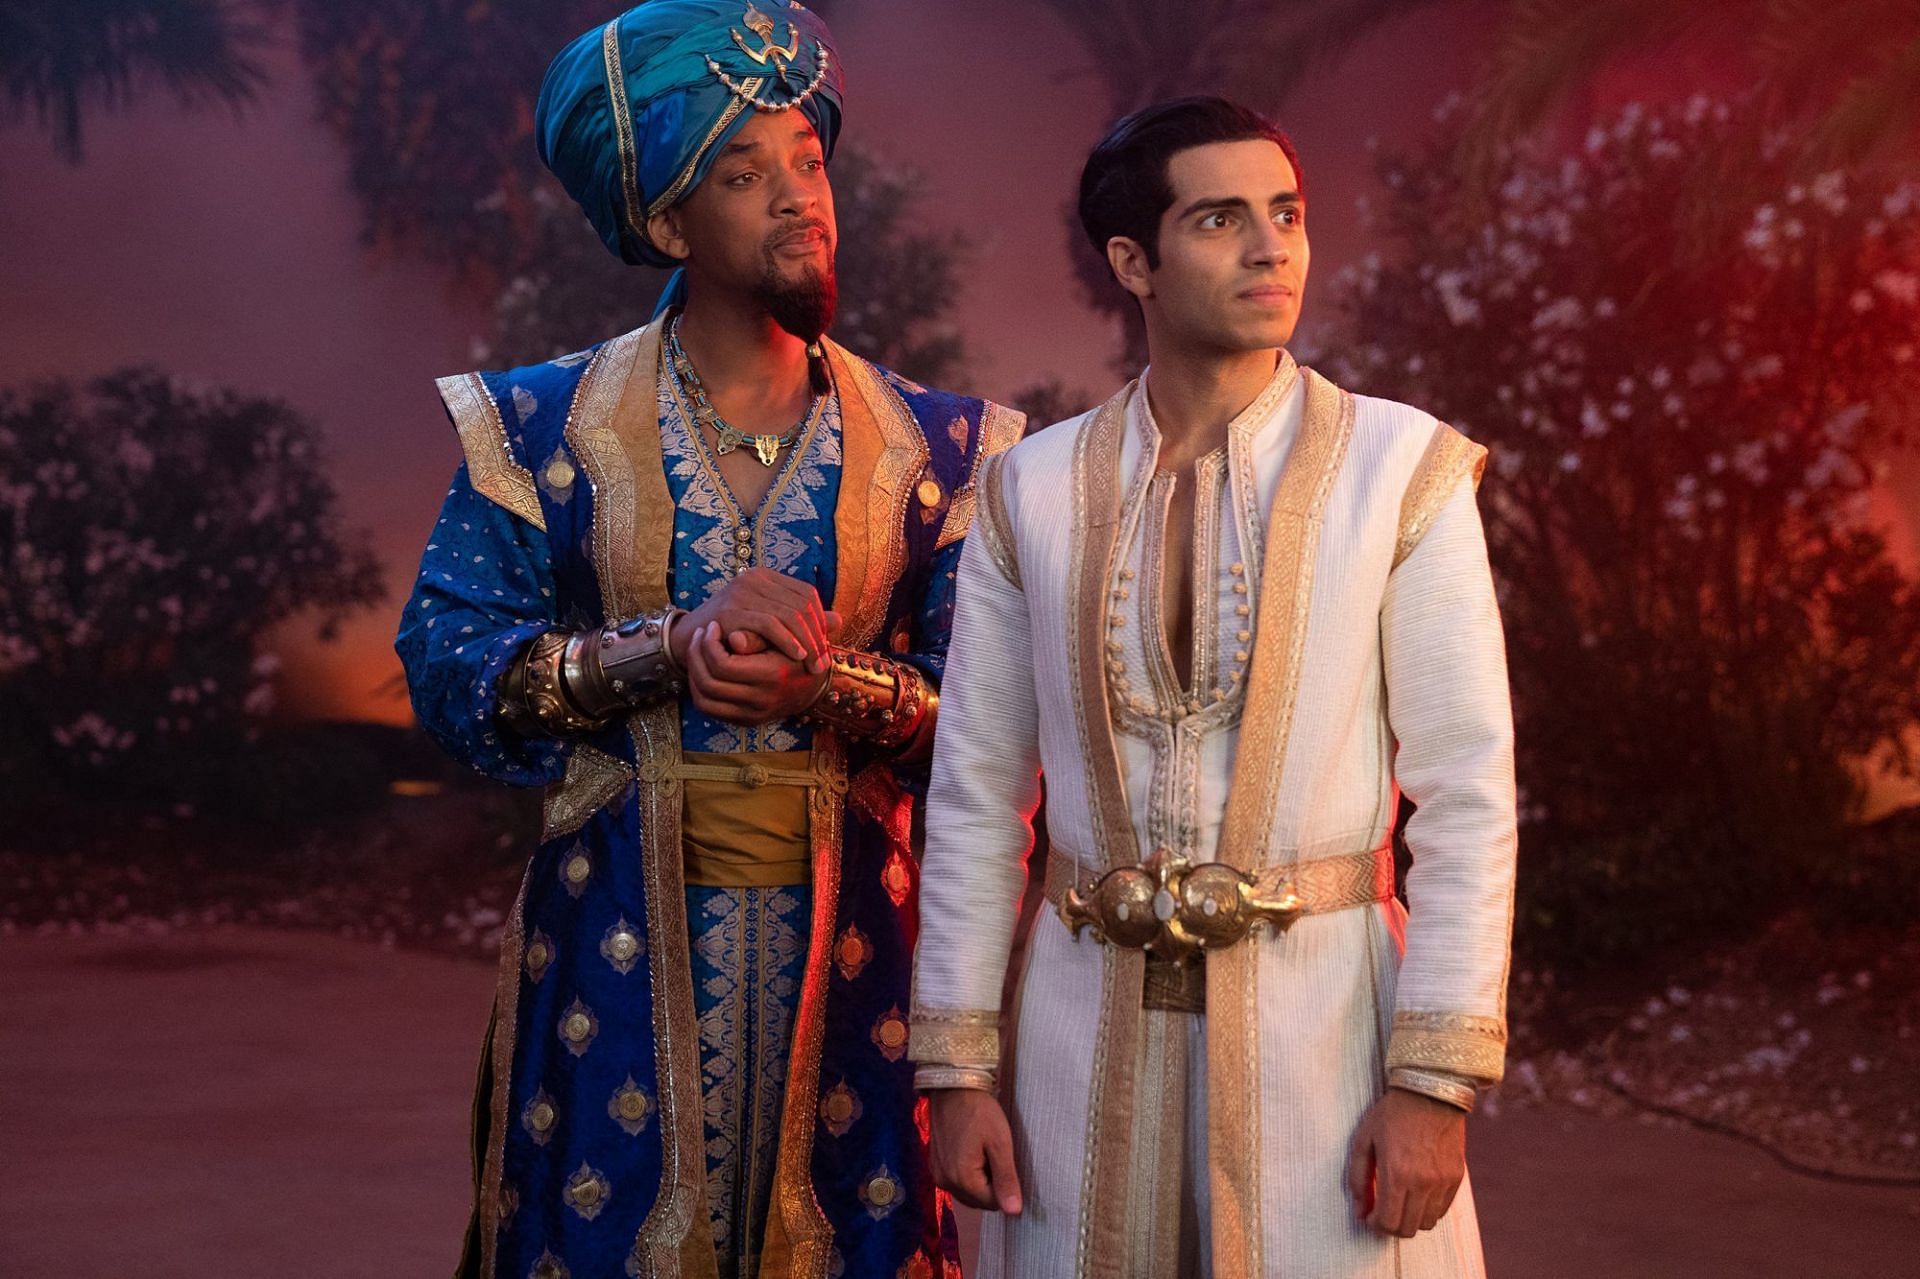 Genie and Aladdin (Image via Disney)